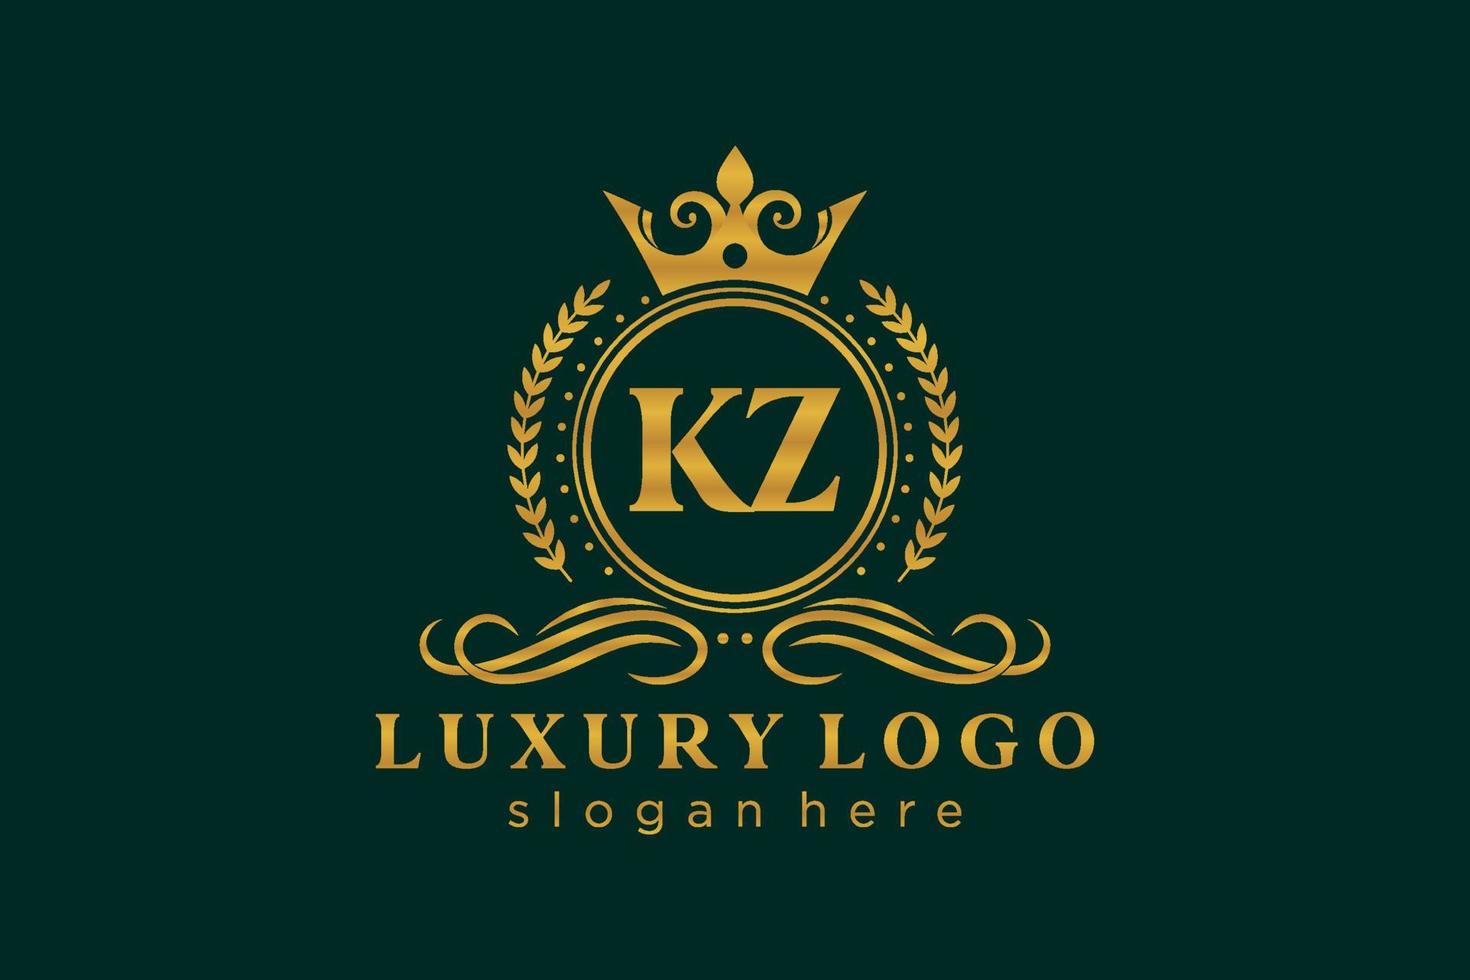 plantilla de logotipo de lujo real de letra kz inicial en arte vectorial para restaurante, realeza, boutique, cafetería, hotel, heráldica, joyería, moda y otras ilustraciones vectoriales. vector